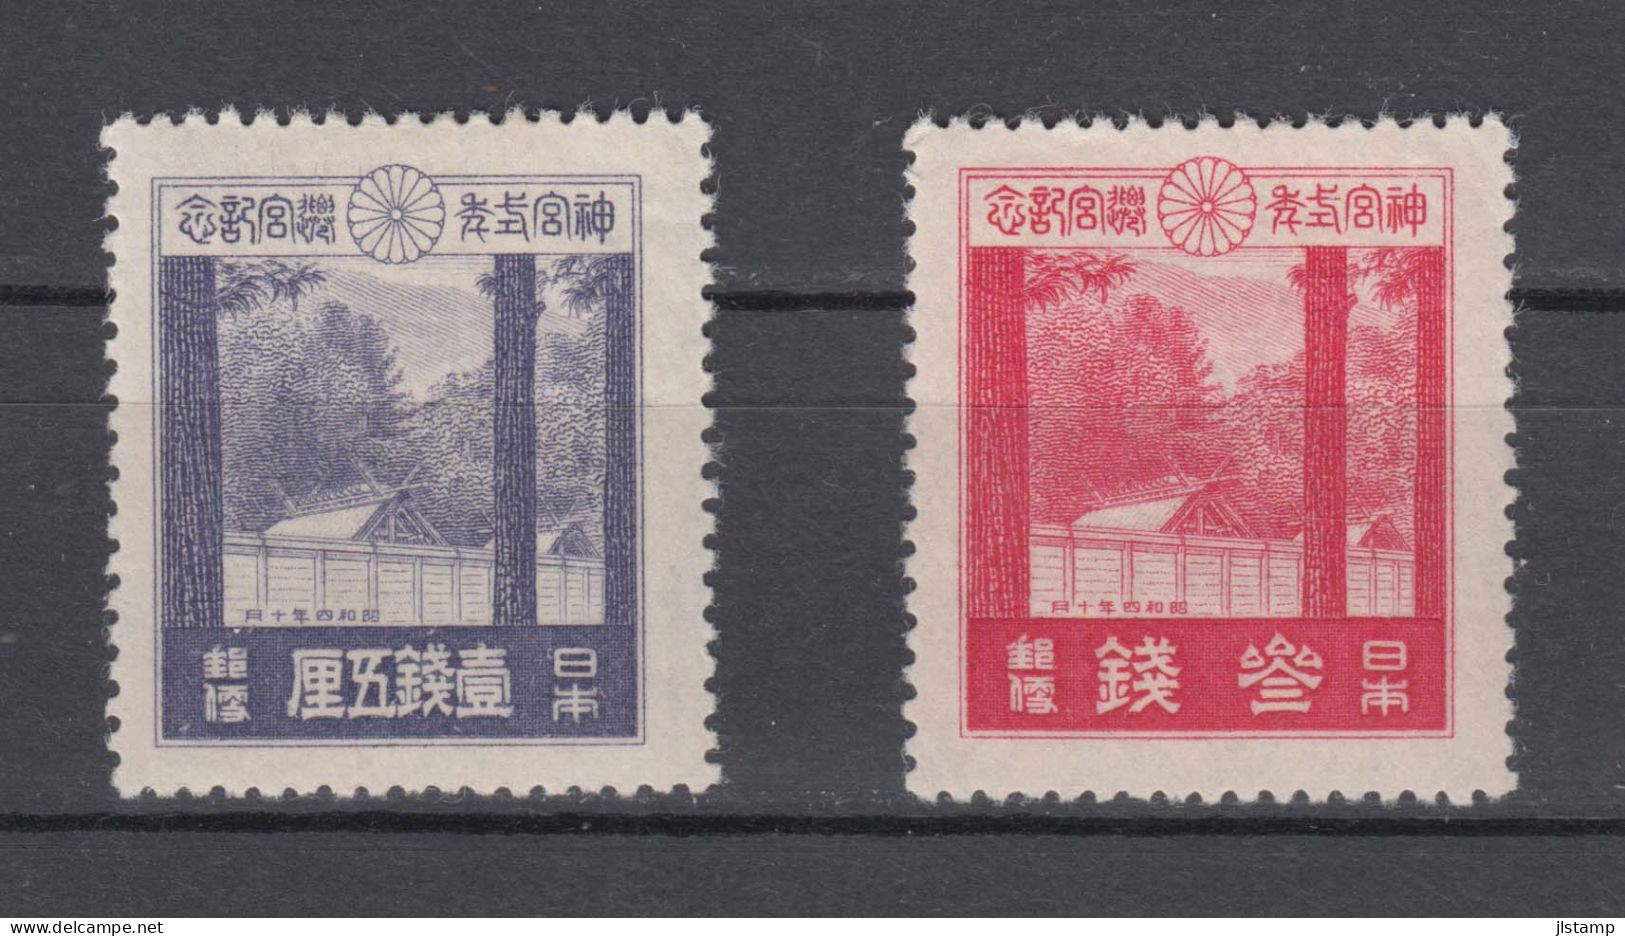 Japan 1929 Ise Shrines Stamps Set Of 2 ,Scott# 206-207,OG MH,VF - Nuovi